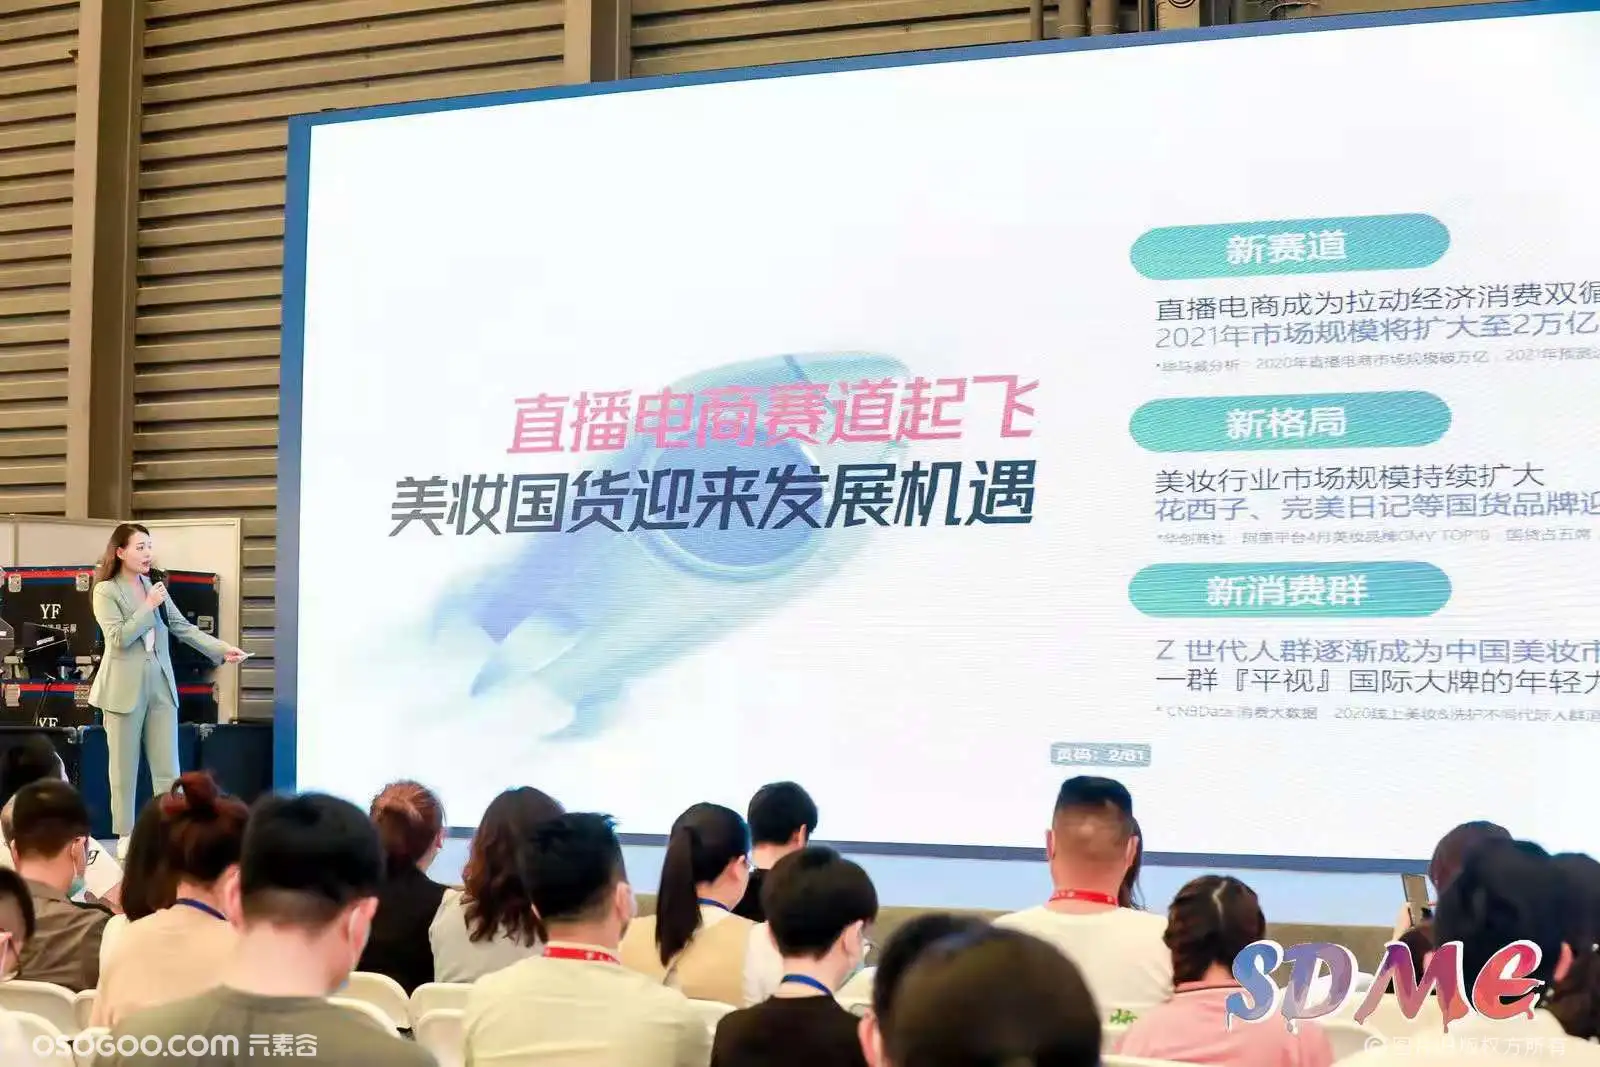 第三届上海国际网红品牌博览会网络保障结束  